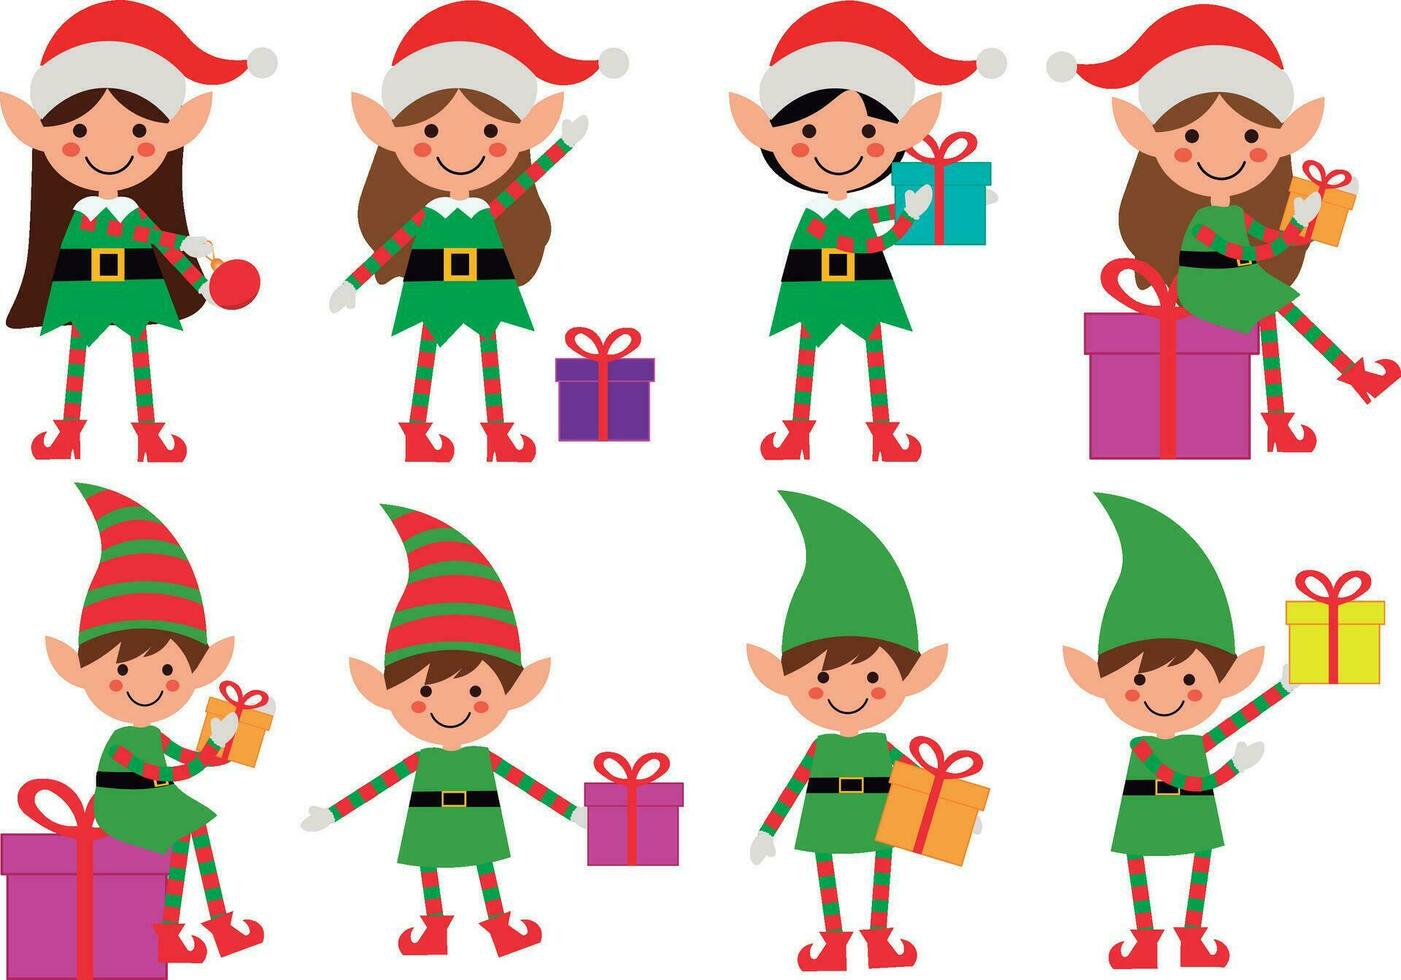 adorable de santa elfos en verde y rojo trajes exhibiendo varios poses y participación Navidad regalos y elementos. Perfecto para festivo fiesta diseños y decoraciones vector